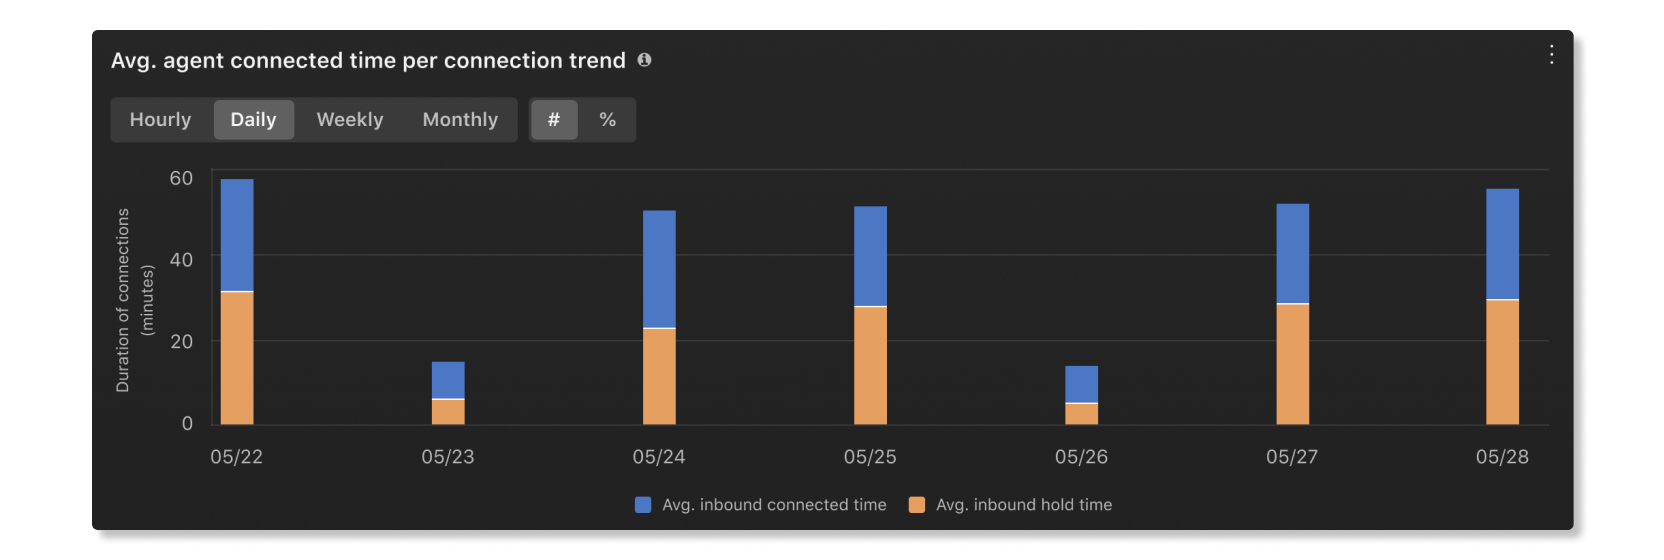 Prosečno vreme povezivanja agenta po grafikonu trendova veze u statistiki agenta u analitici kupaca